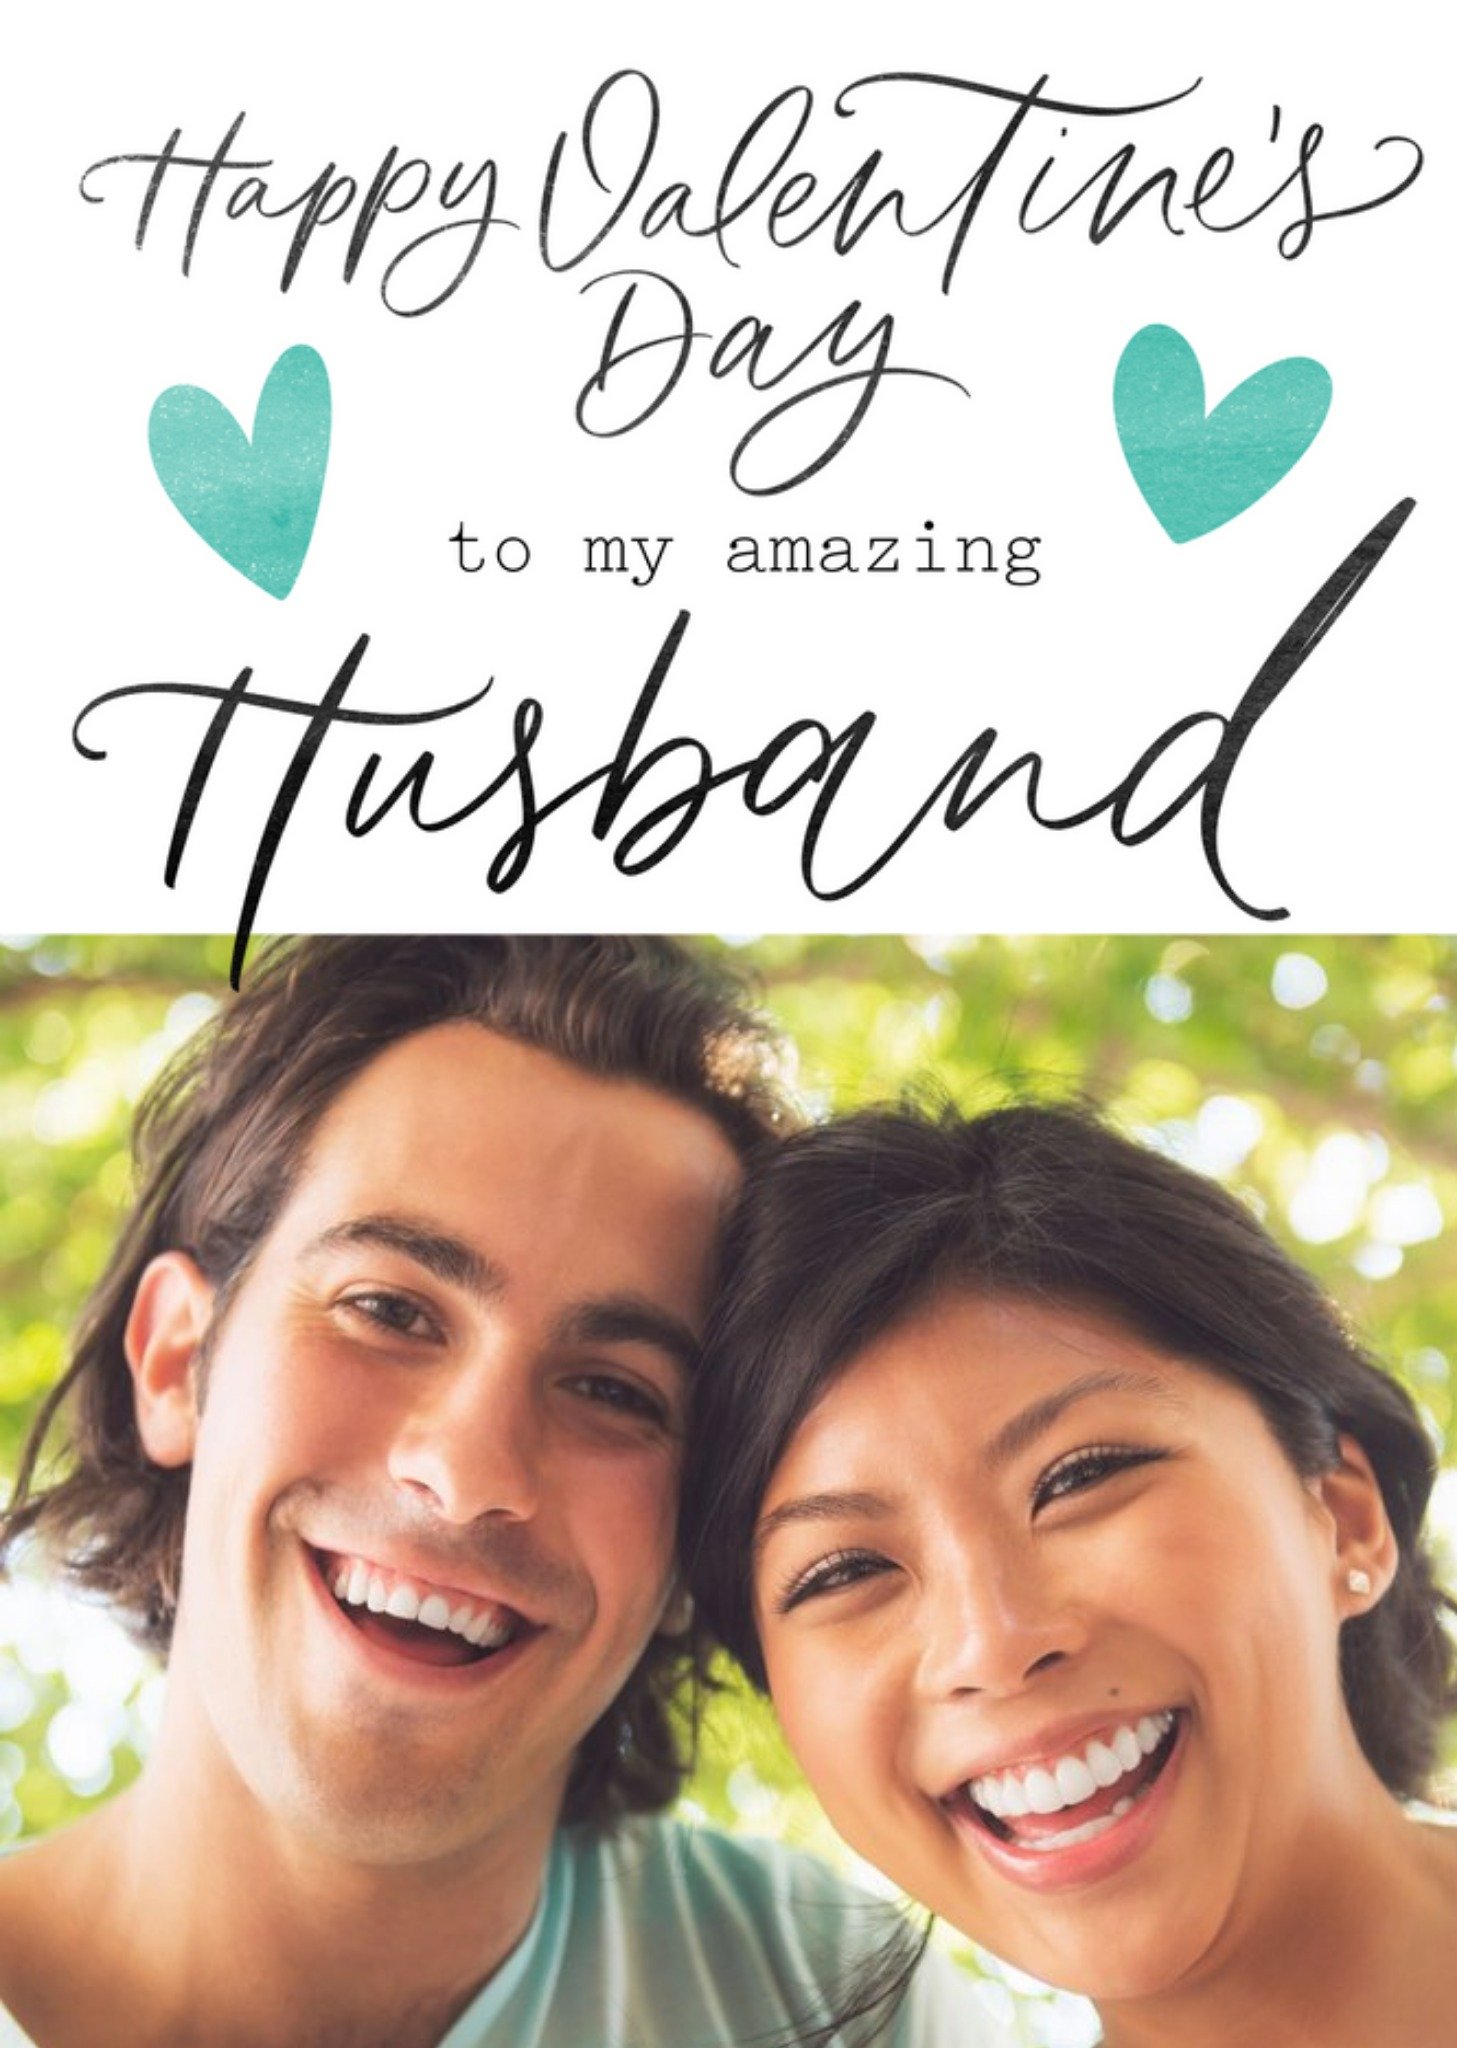 Moonpig Typographic Happy Valentine's Amazing Husband Photo Upload Card, Large